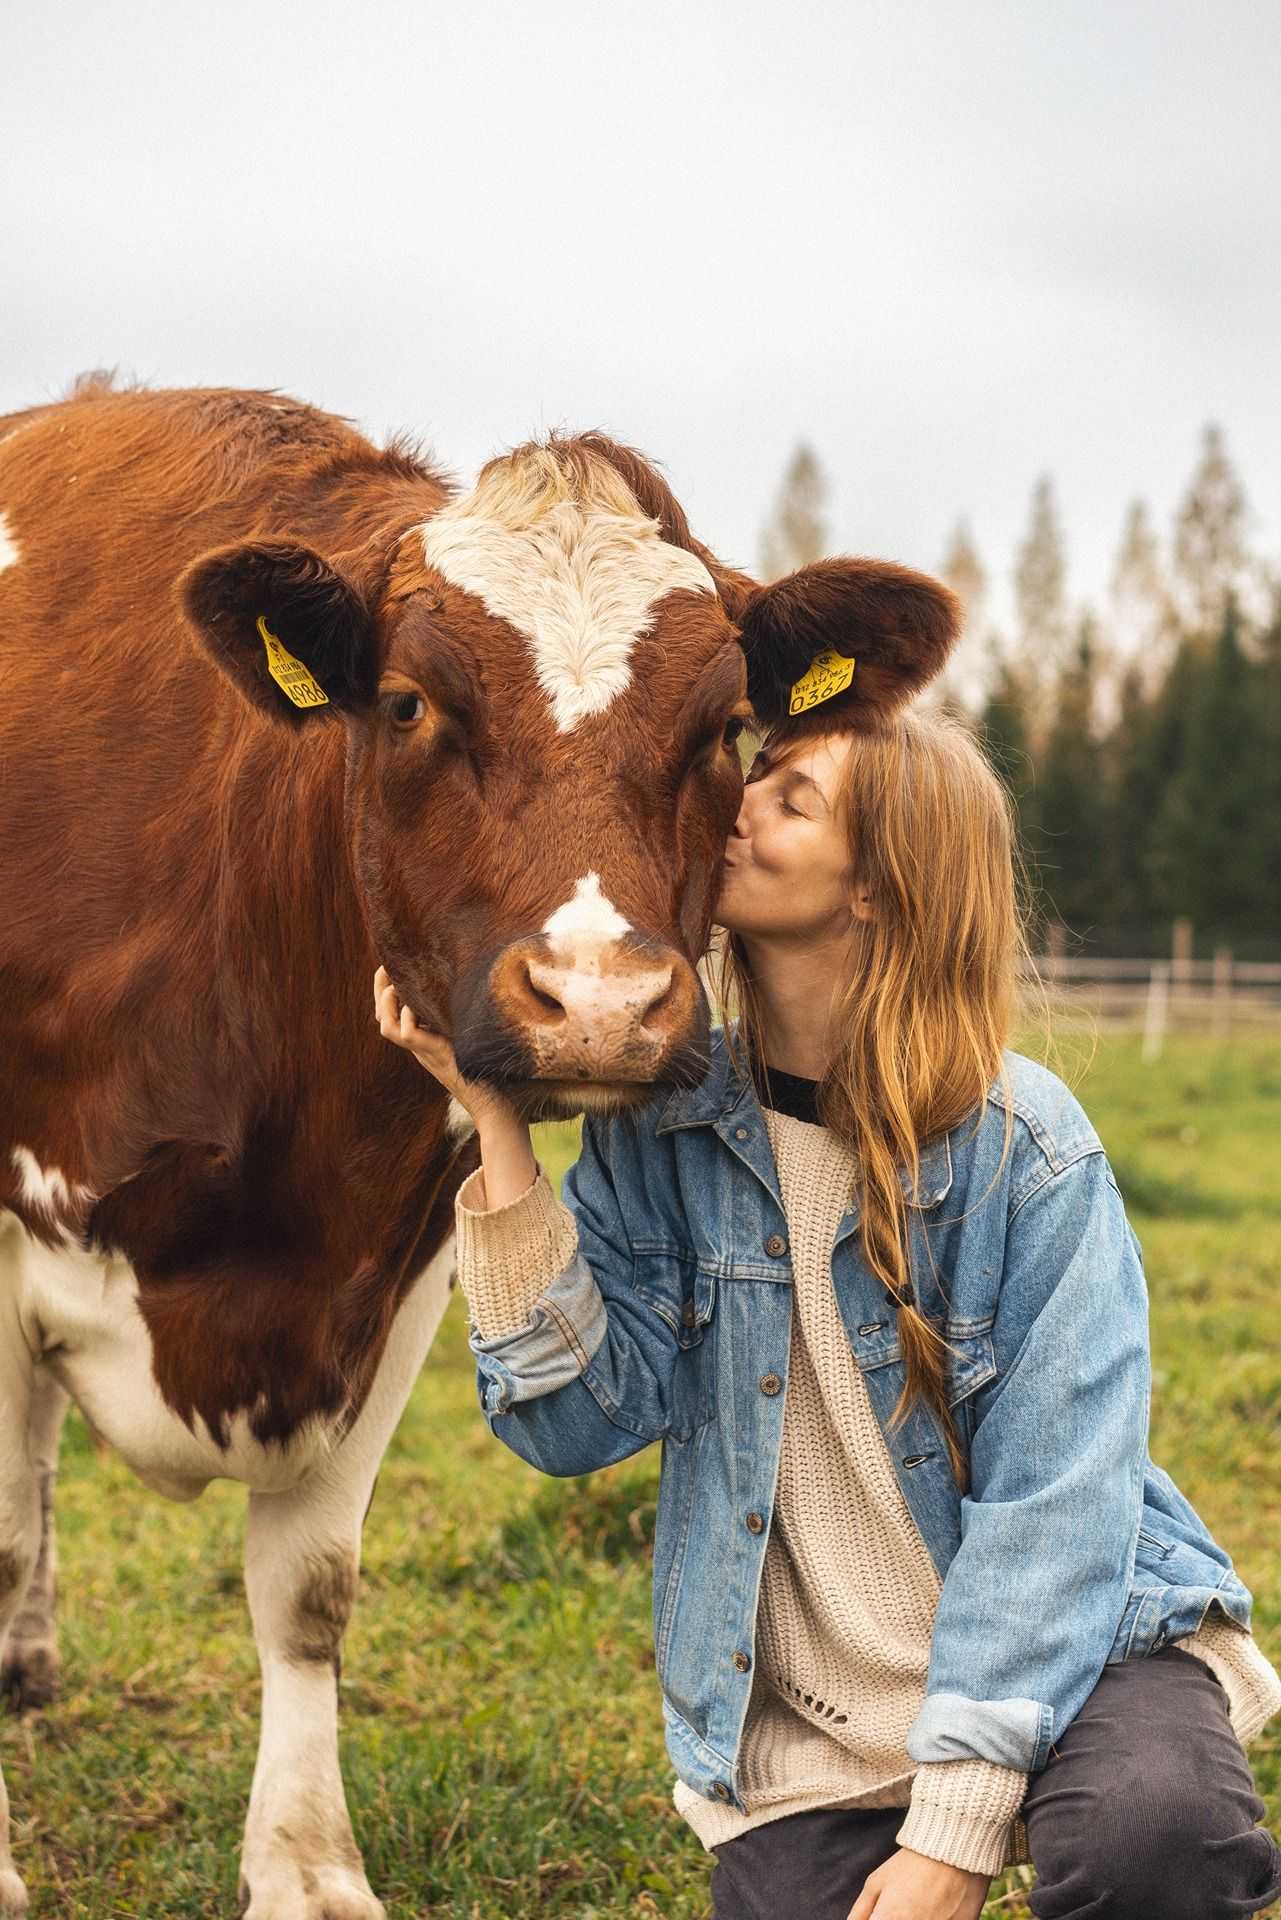 Jenna suukottaa lehmää poskelle